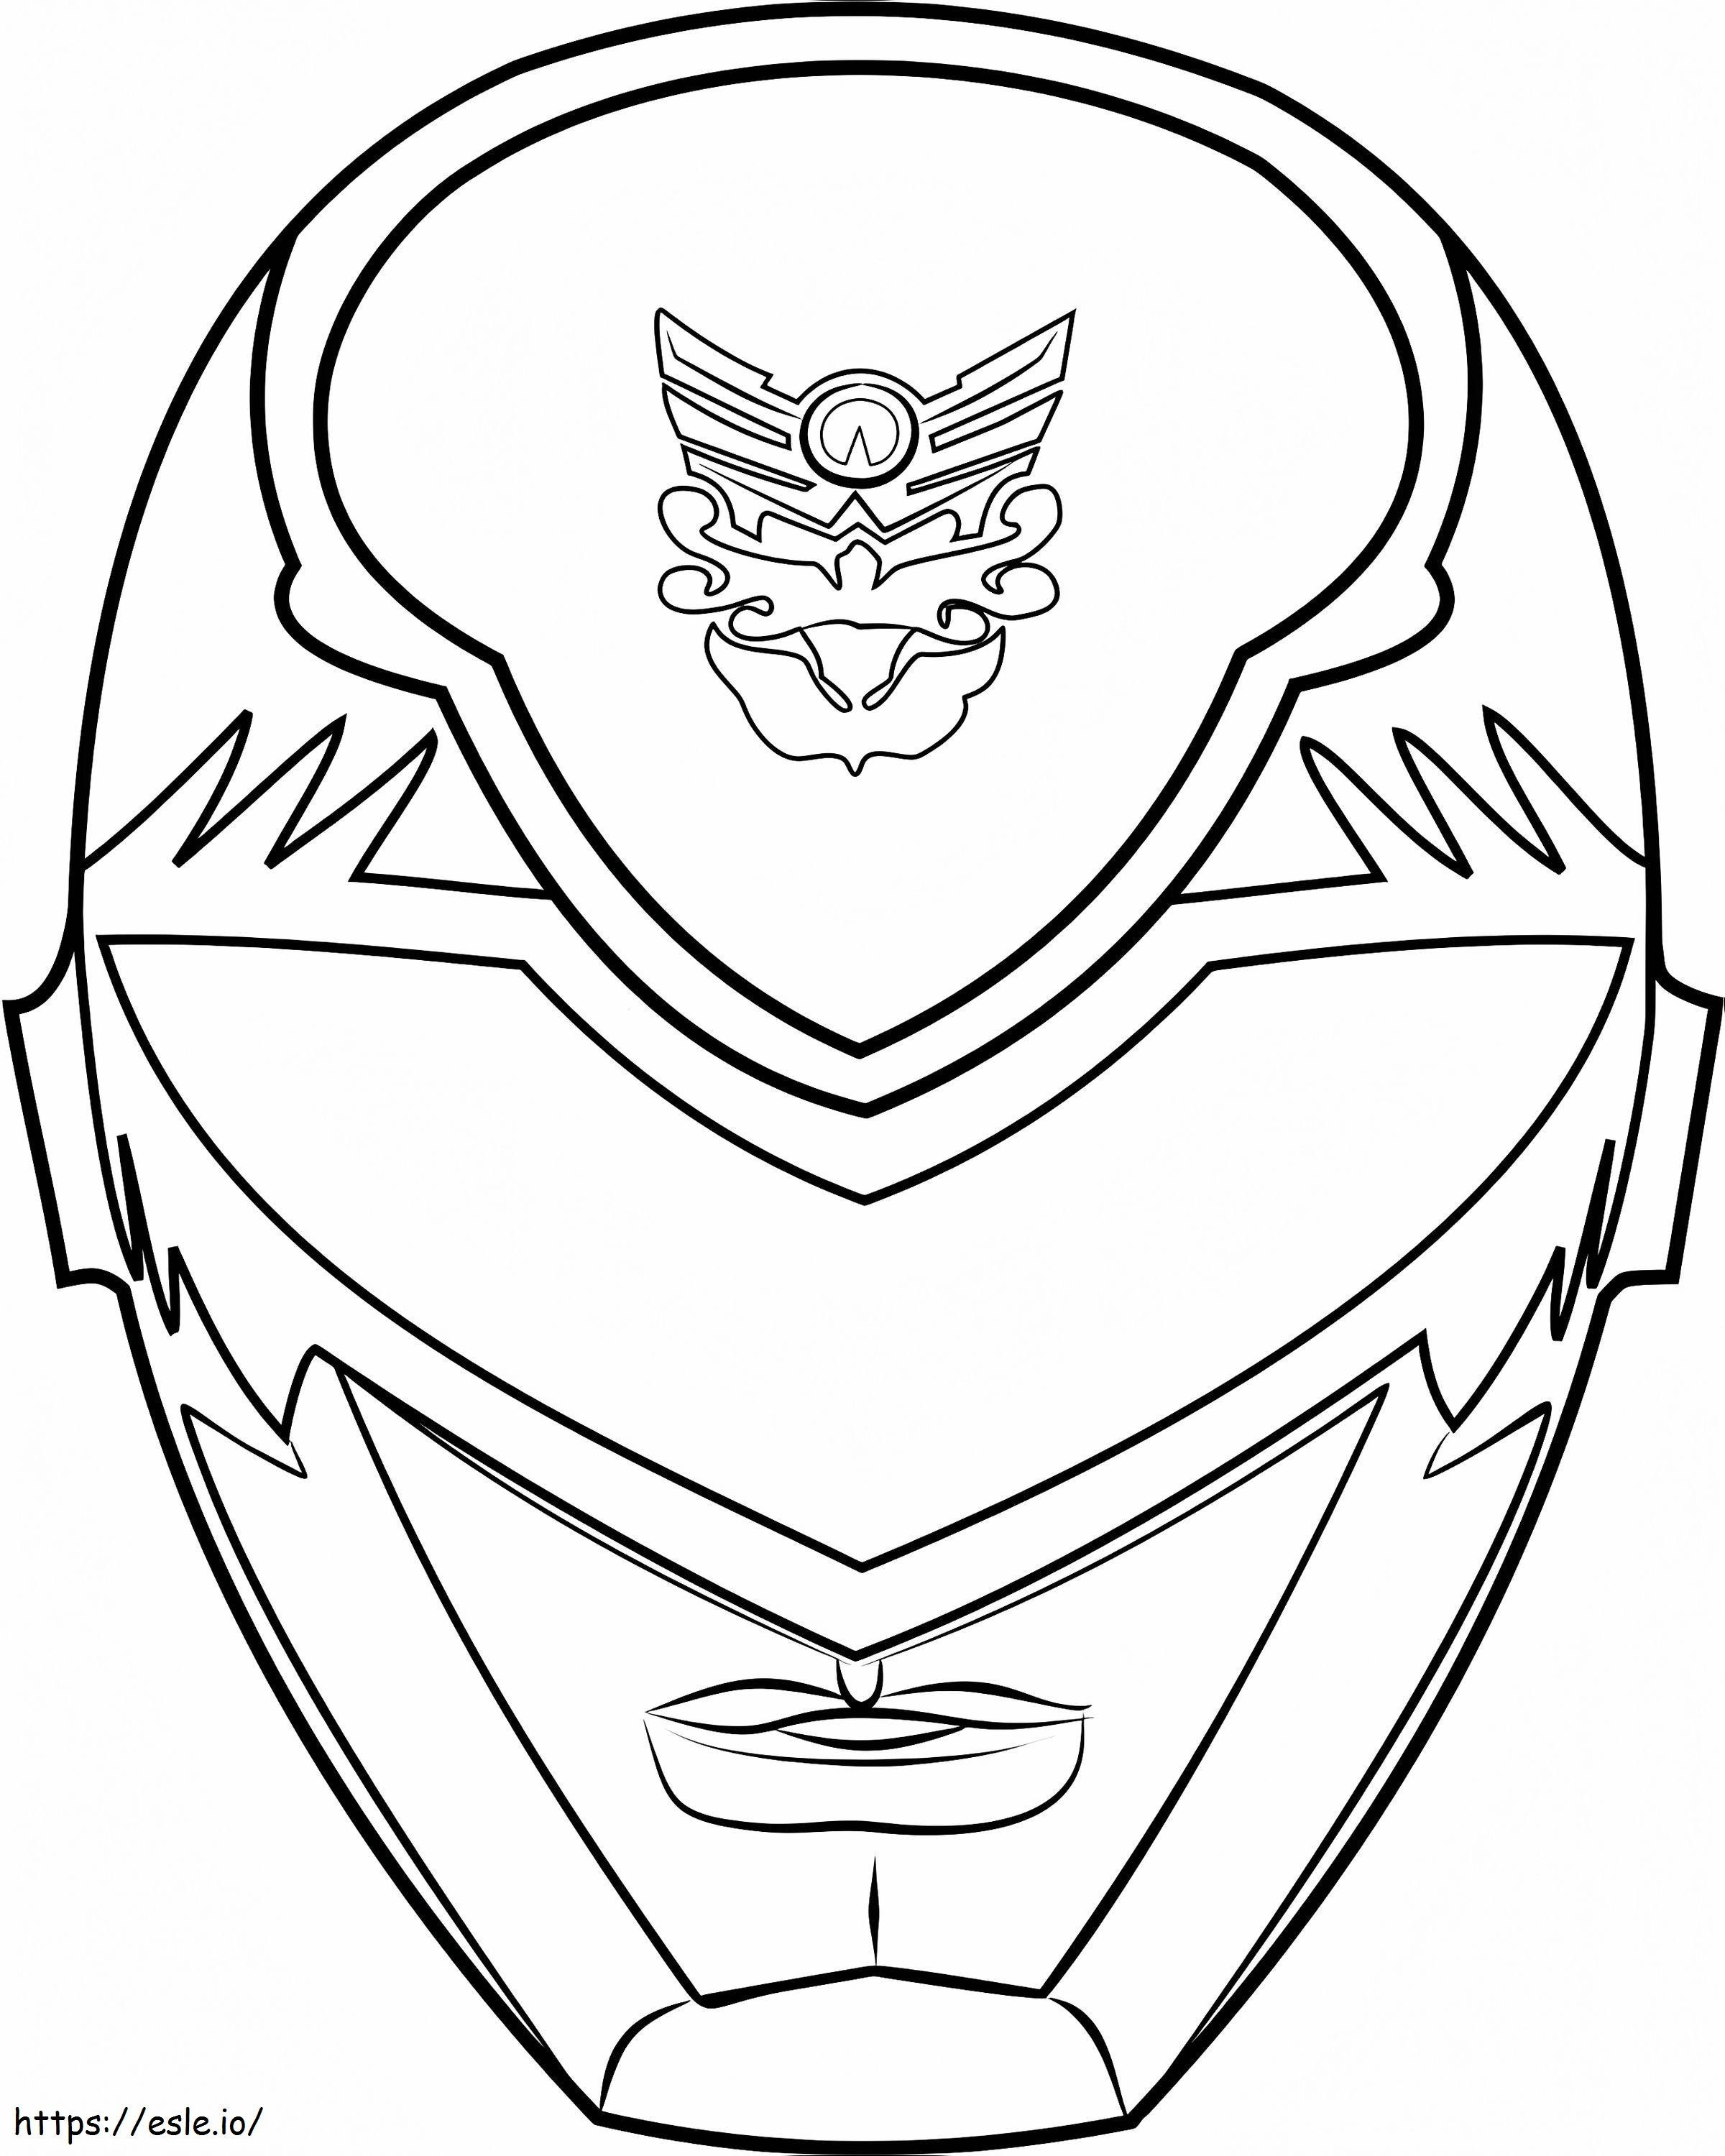 Coloriage 1530501643Masque Power Ranger1 à imprimer dessin